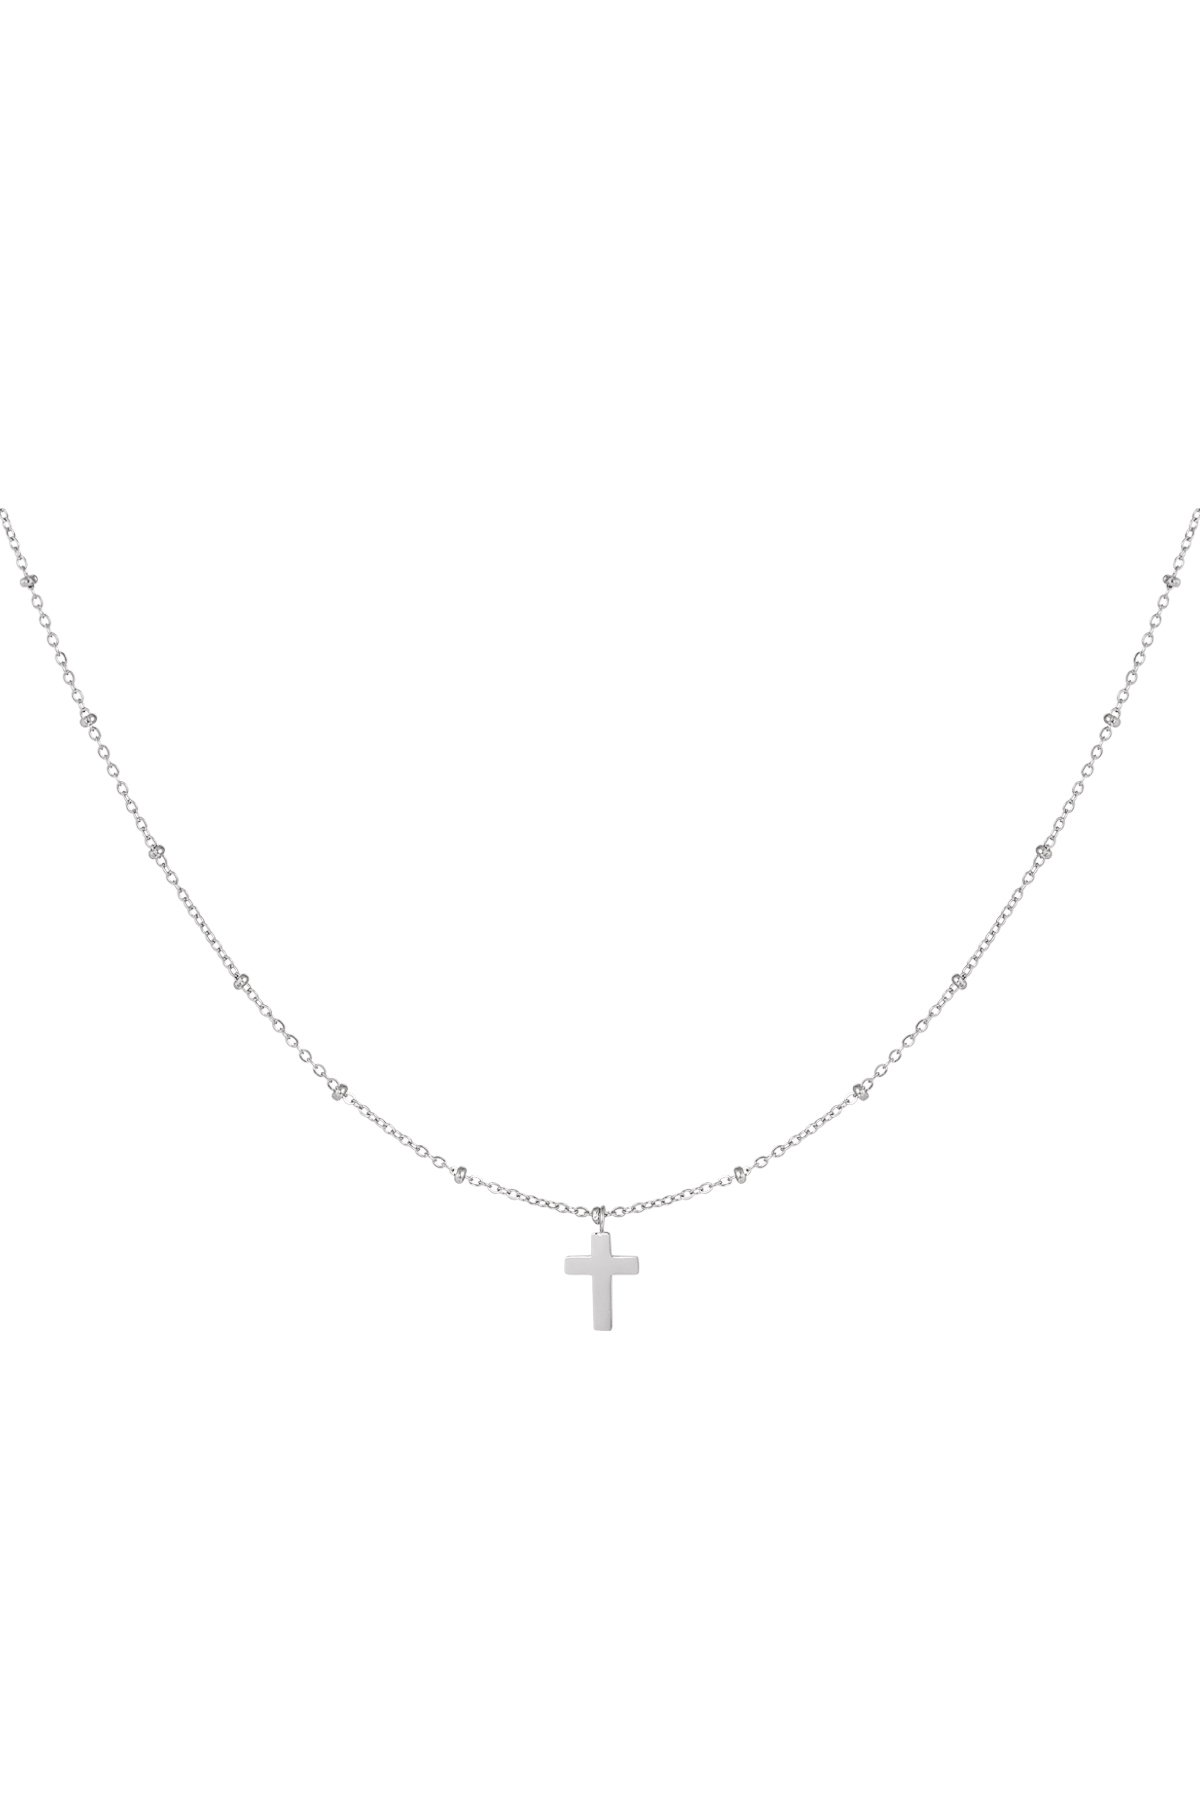 Halskette Kreuz - Silber Edelstahl